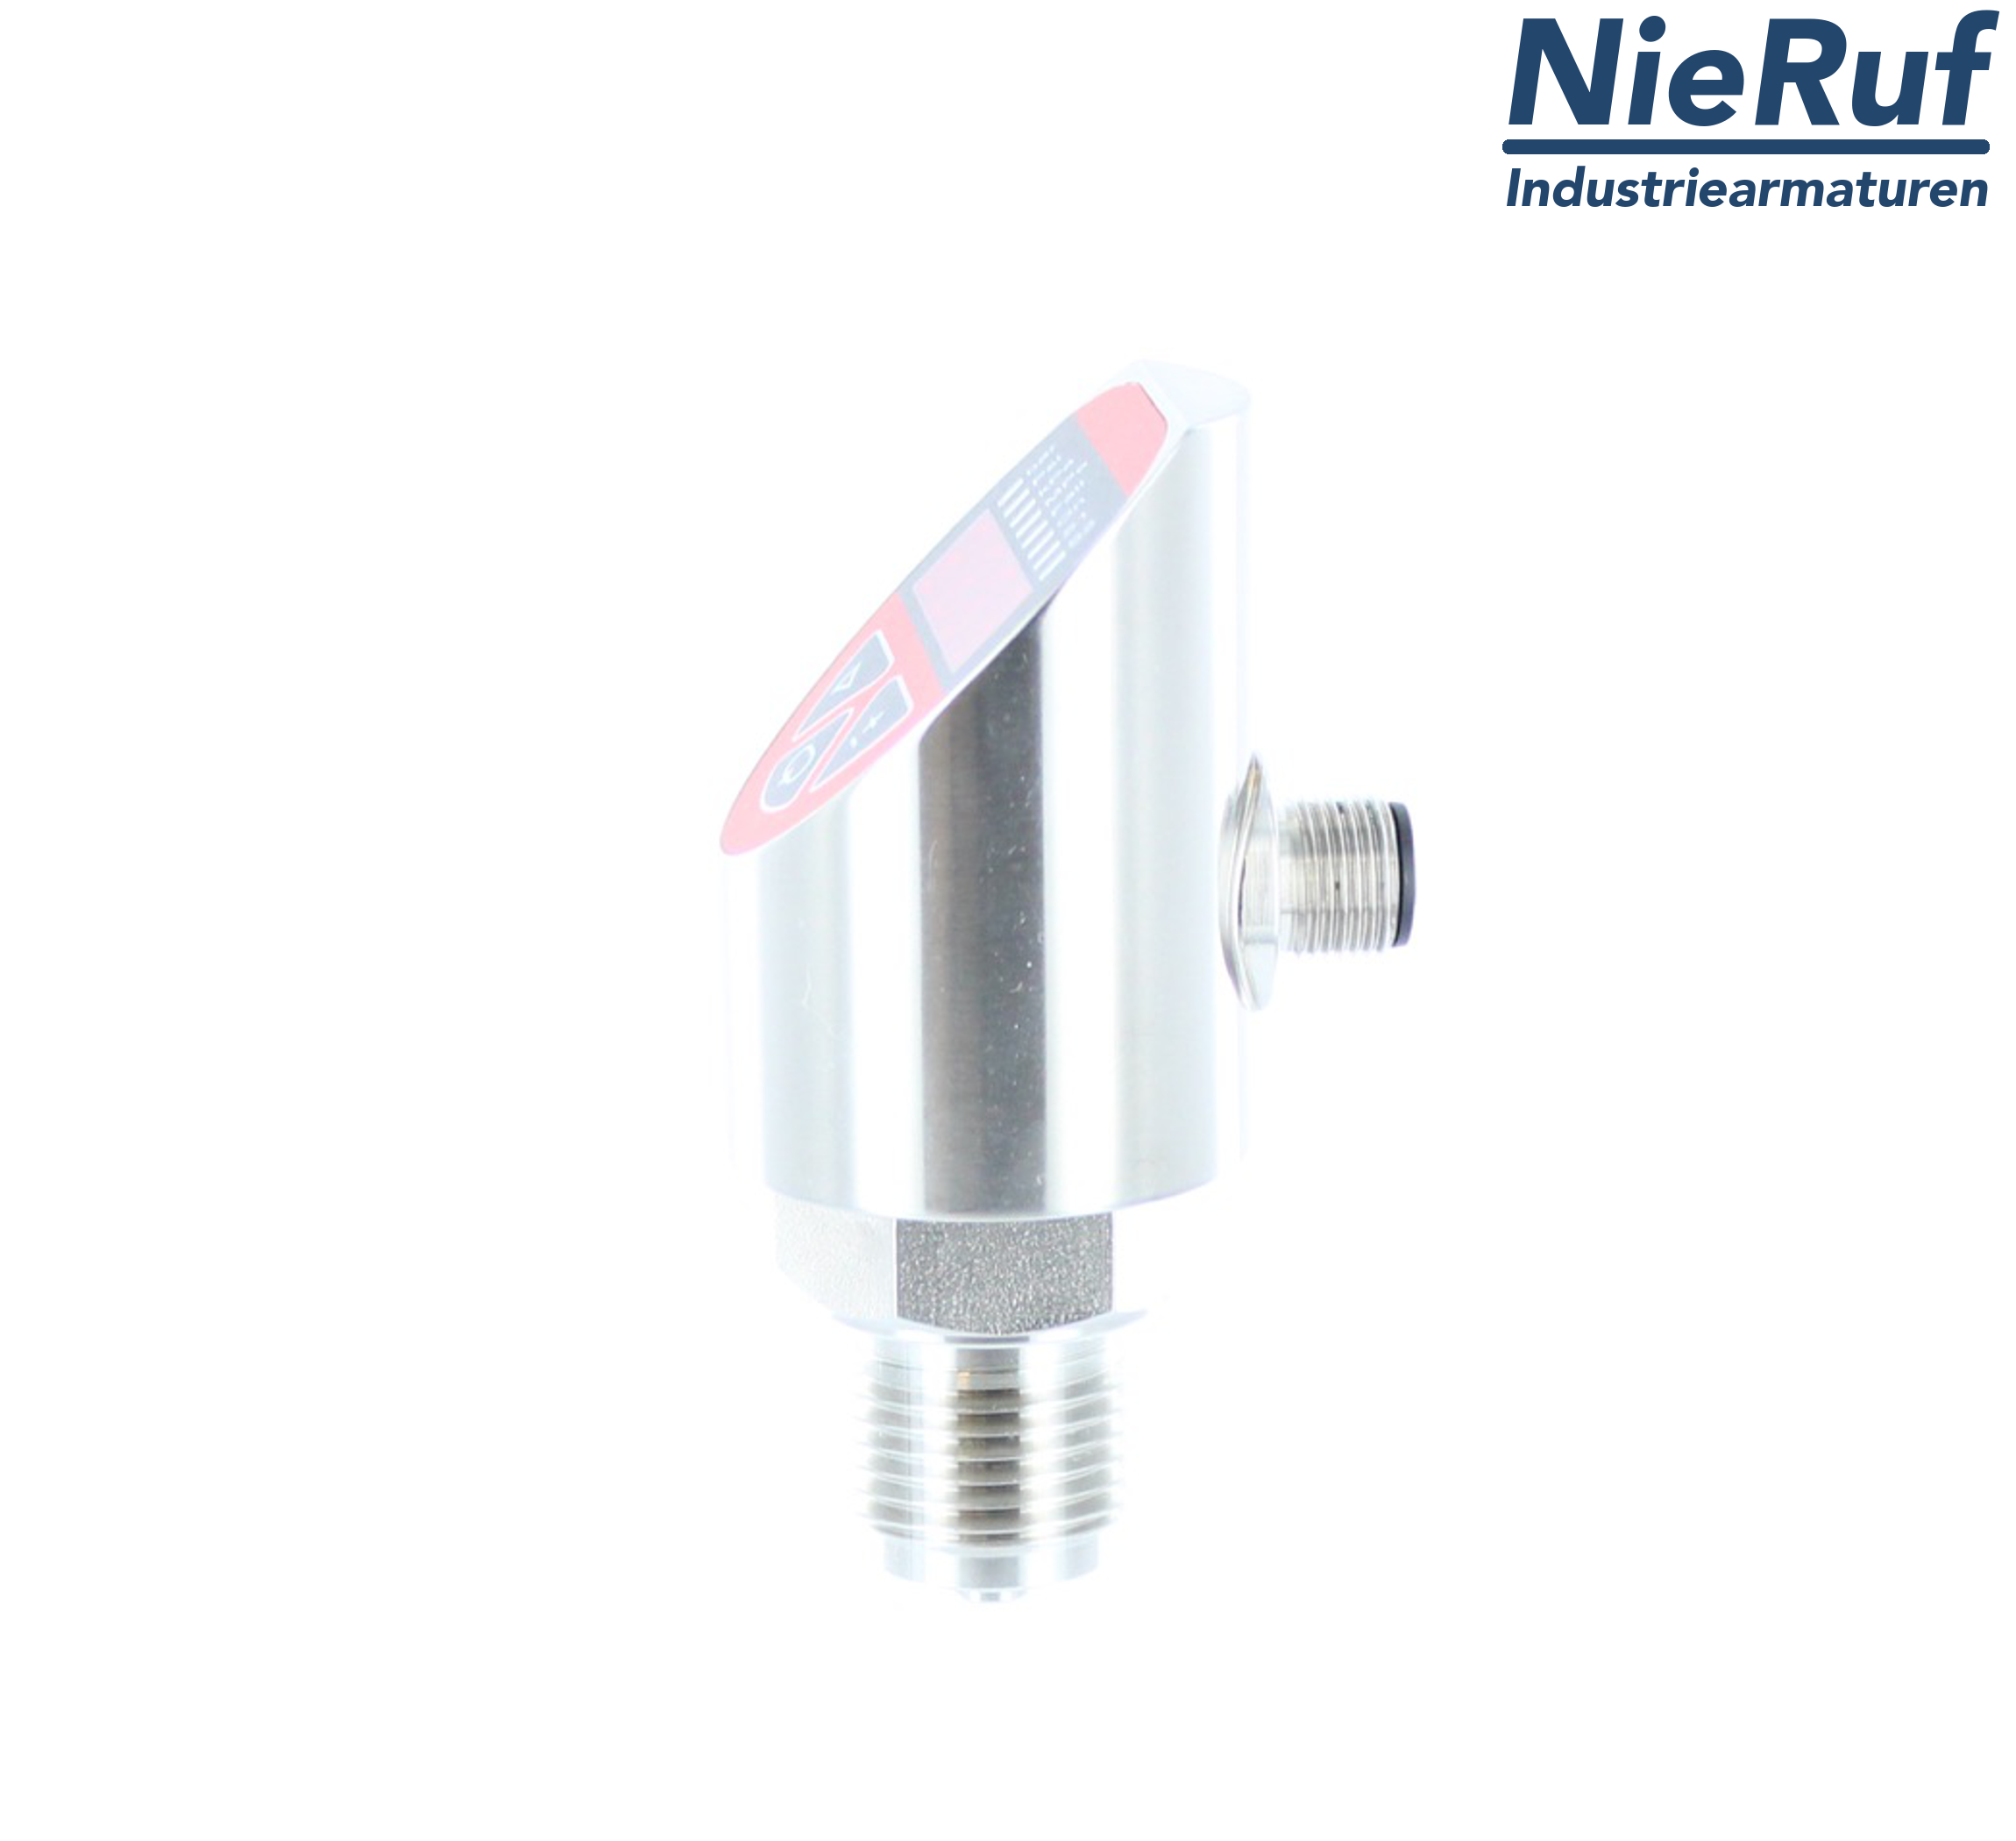 digital pressure sensor G 1/2" B IB 5-wire: 2xPNP, 1x4 - 20mA FPM 0,0 - 100,0 bar